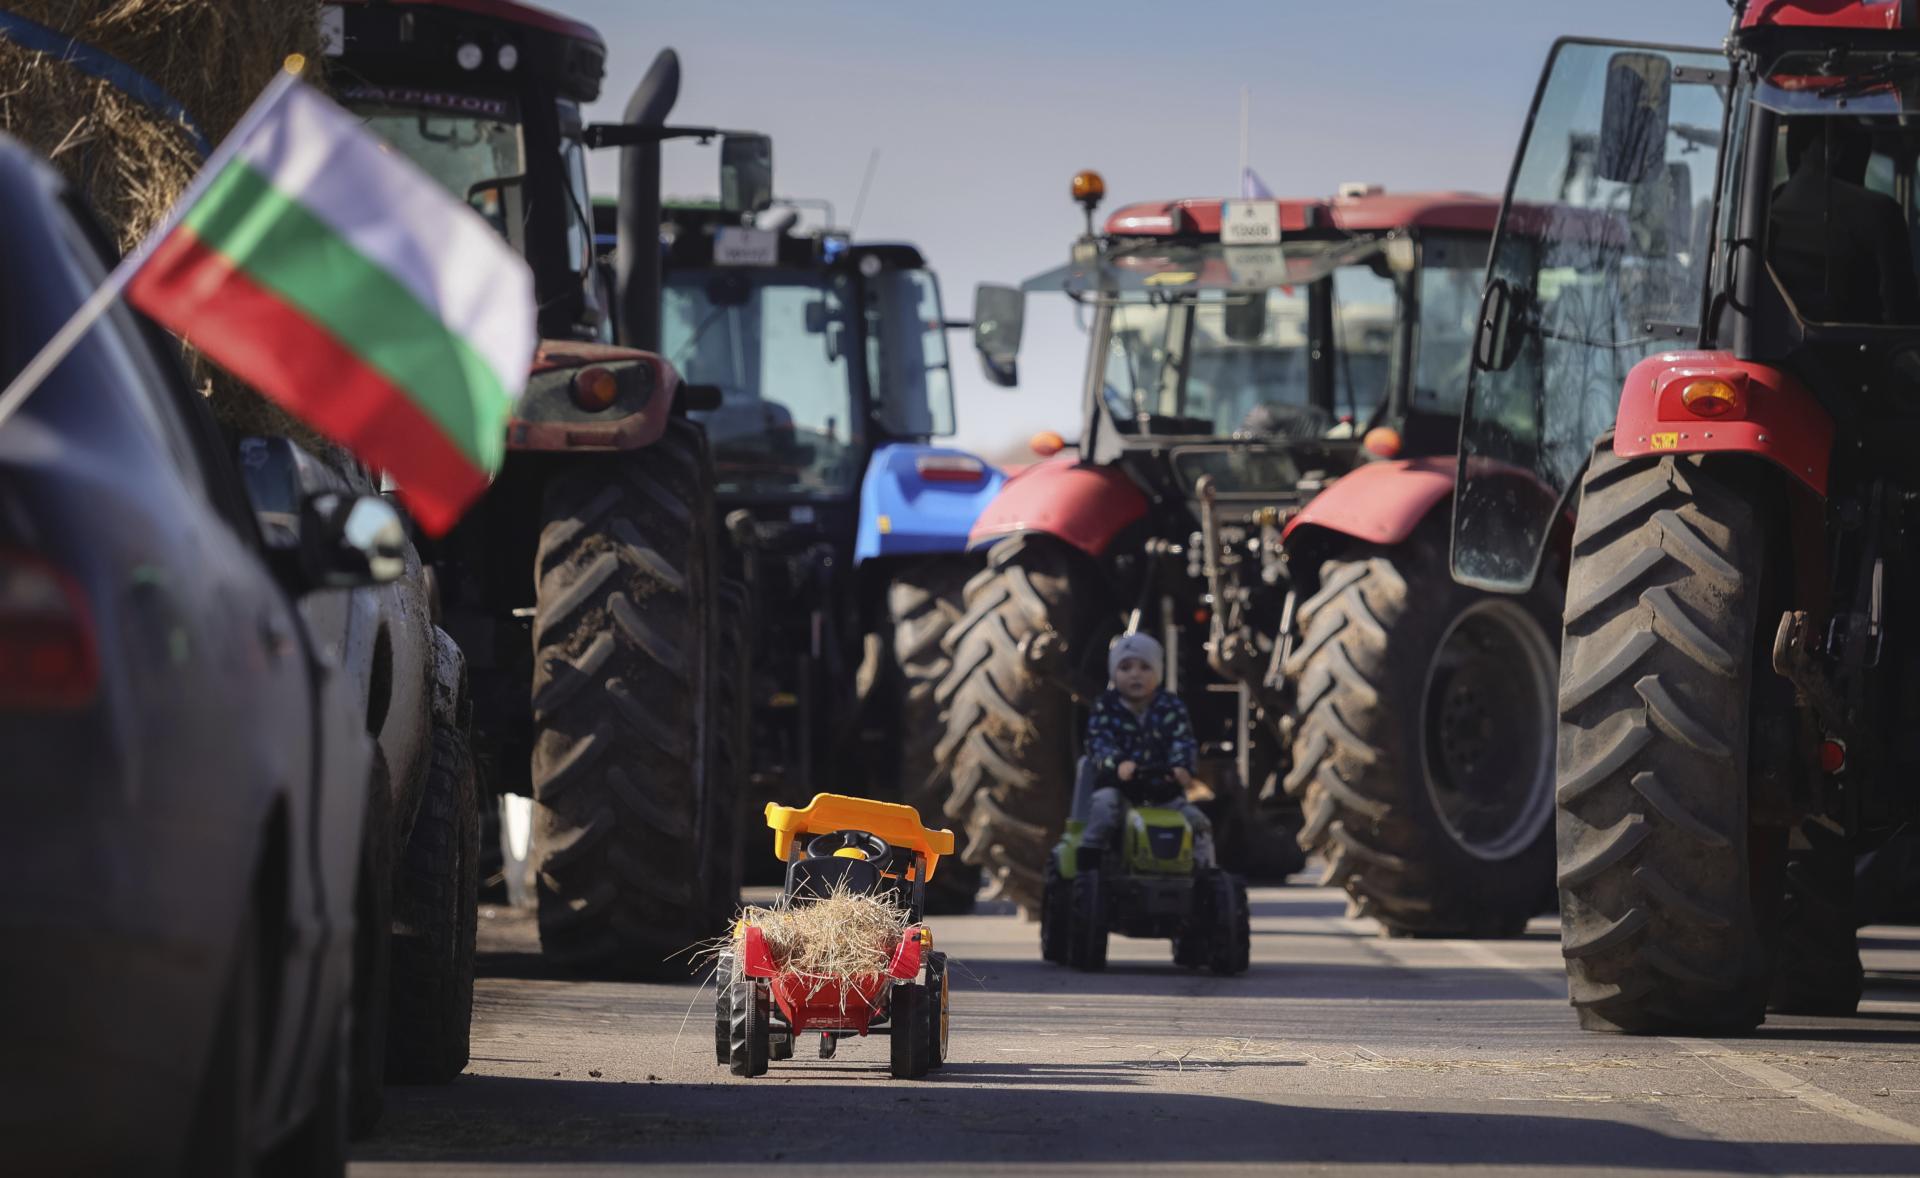 Bulharskí poľnohospodári na protest zablokovali cesty po celej krajine, žiadajú kompenzácie